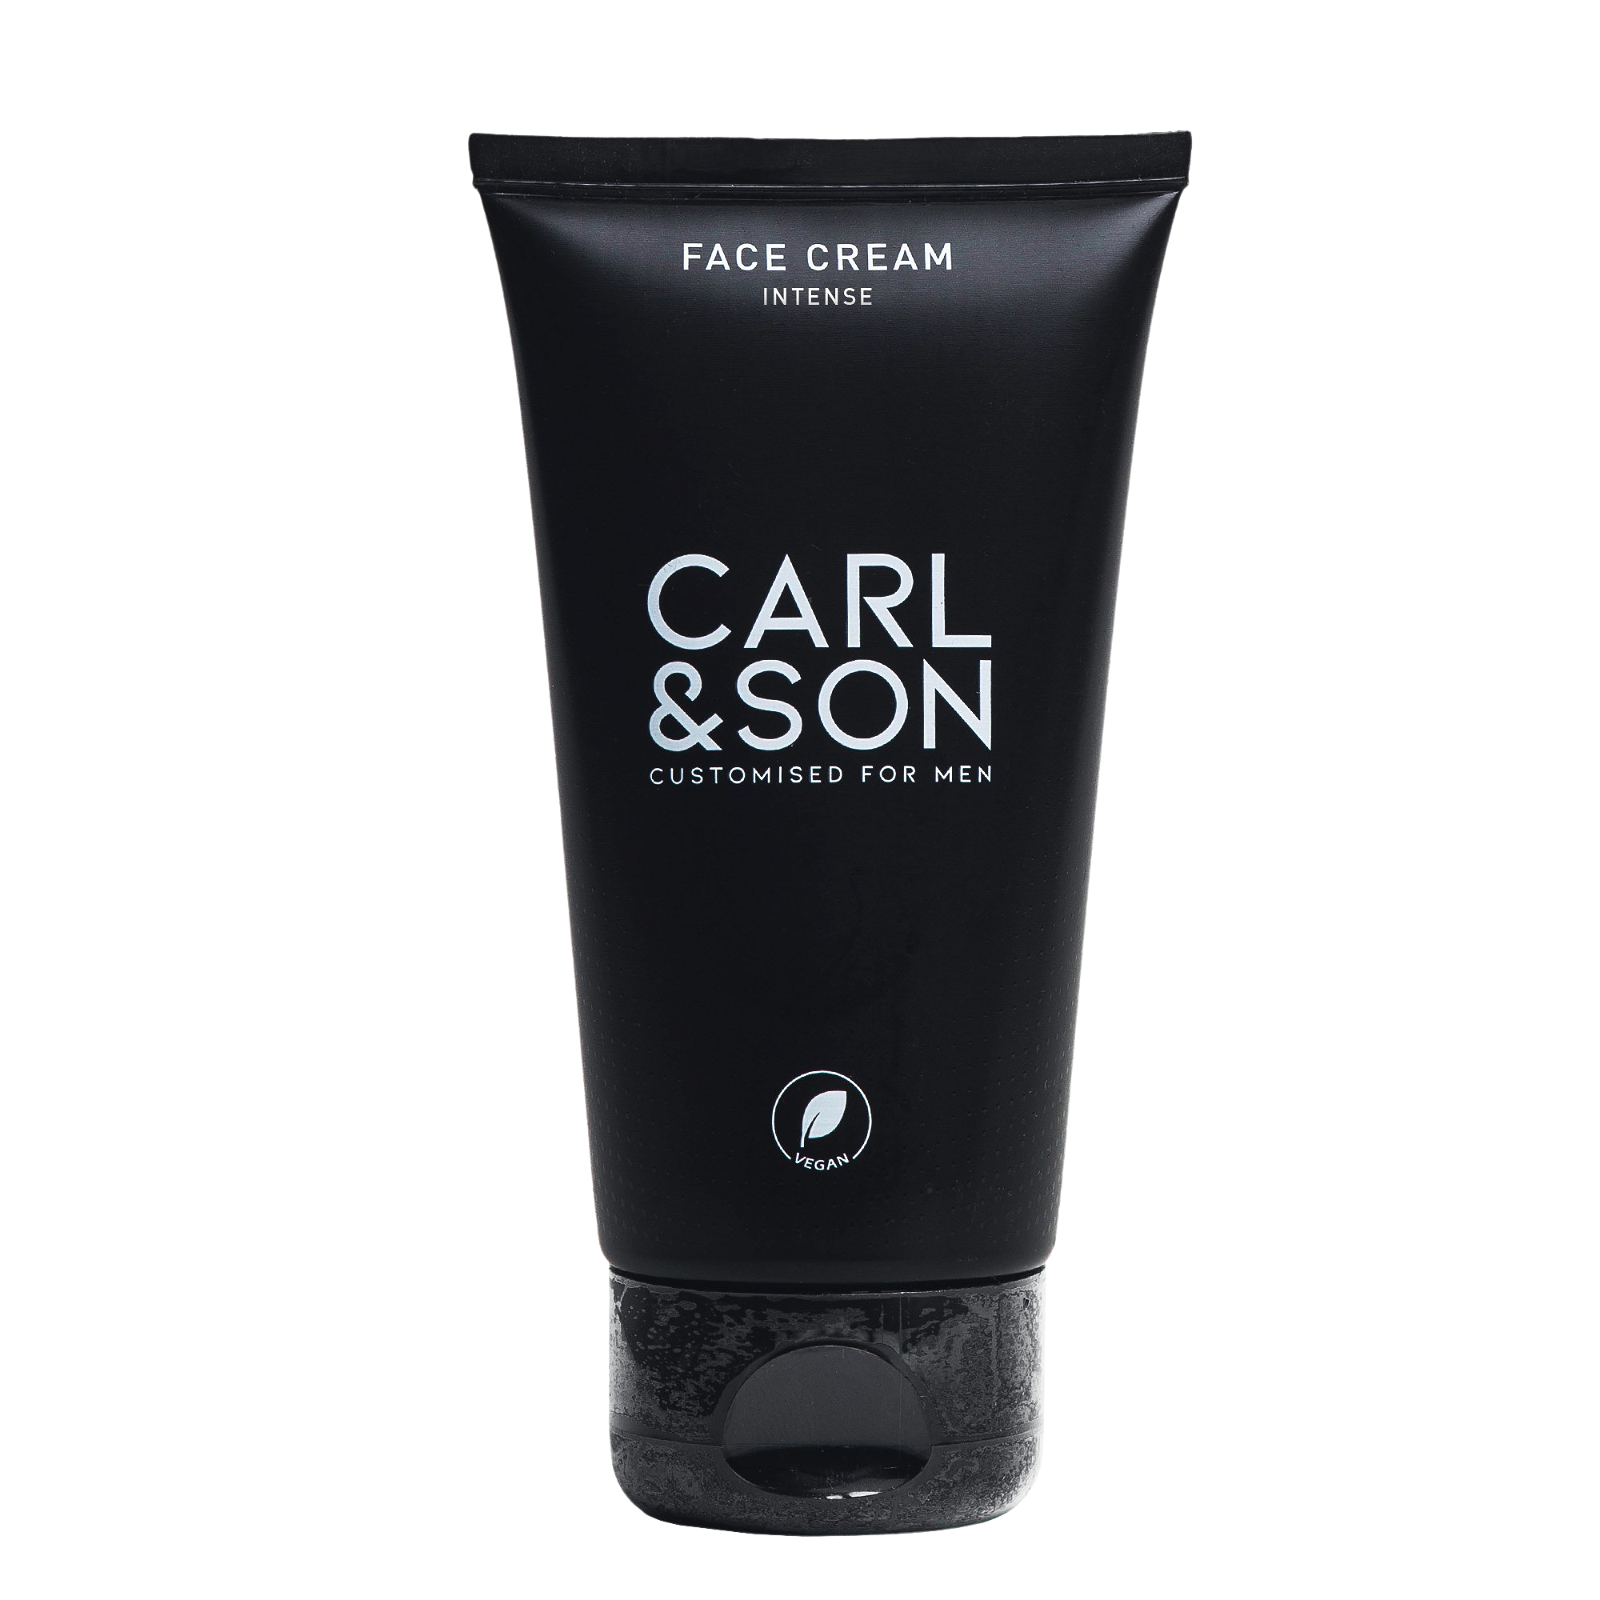 Carl & Son Face Cream Intense